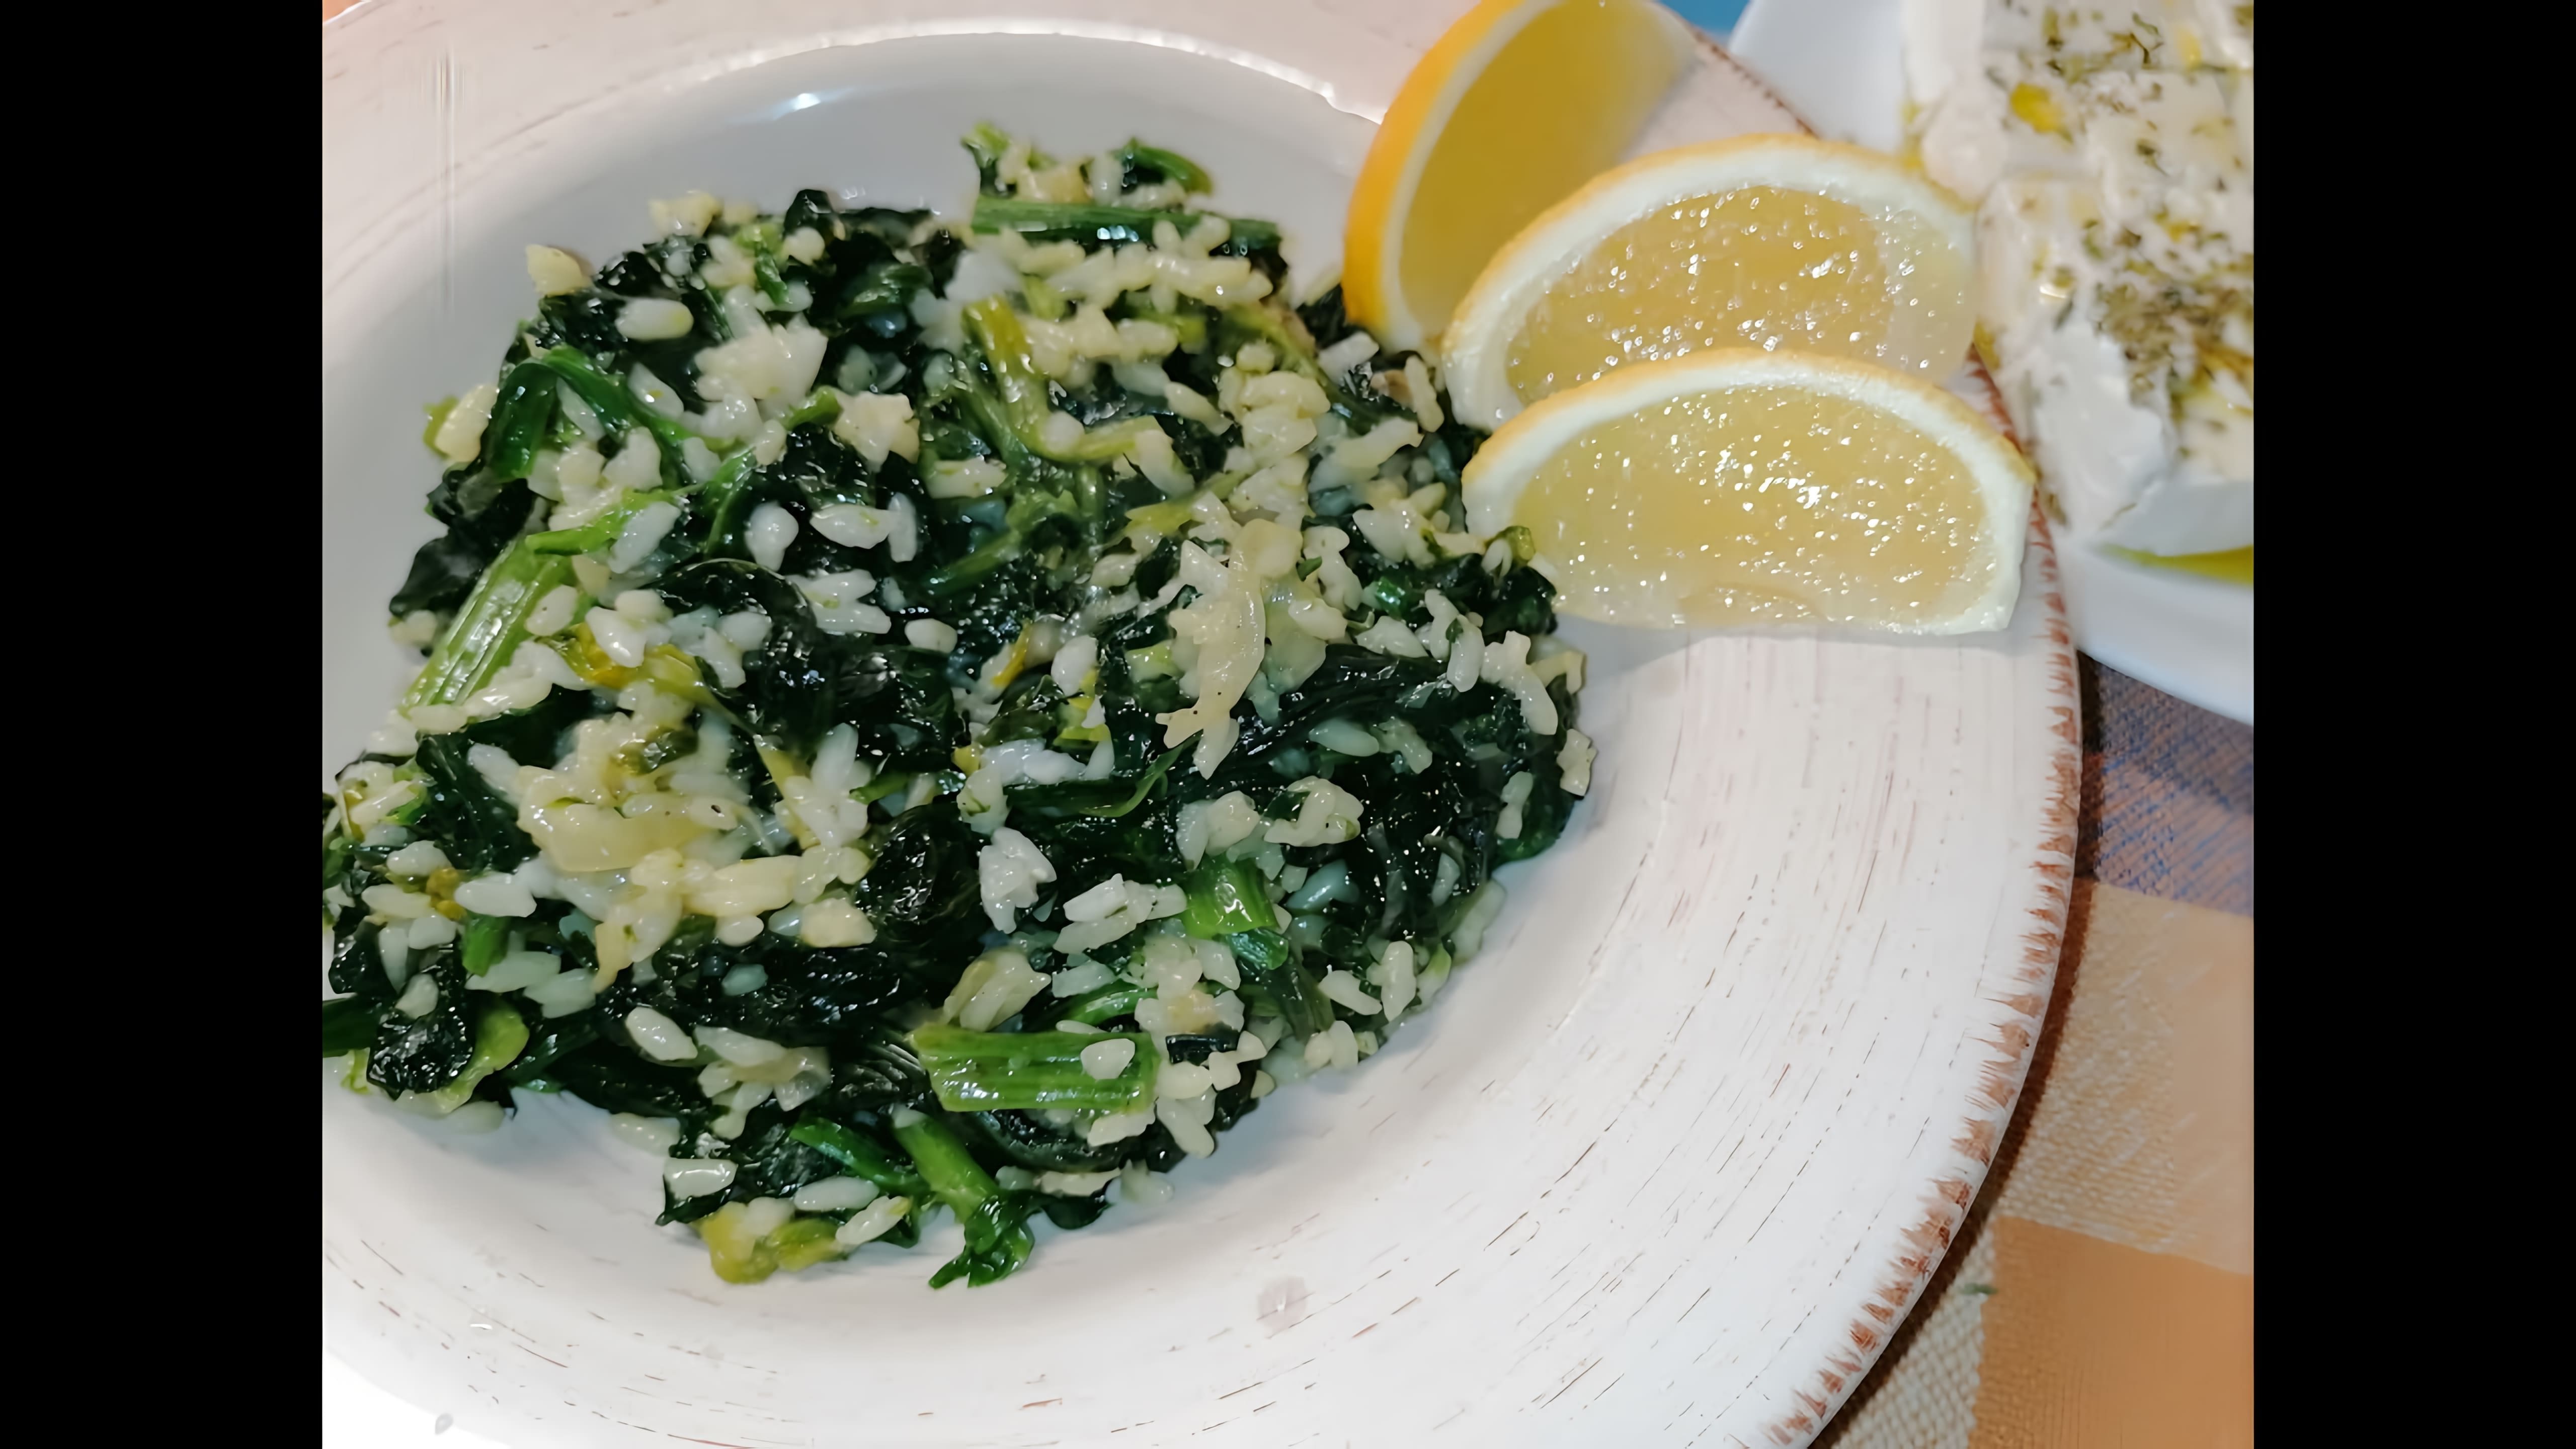 В этом видео демонстрируется процесс приготовления греческого блюда "спанакоризо" (рис со шпинатом)